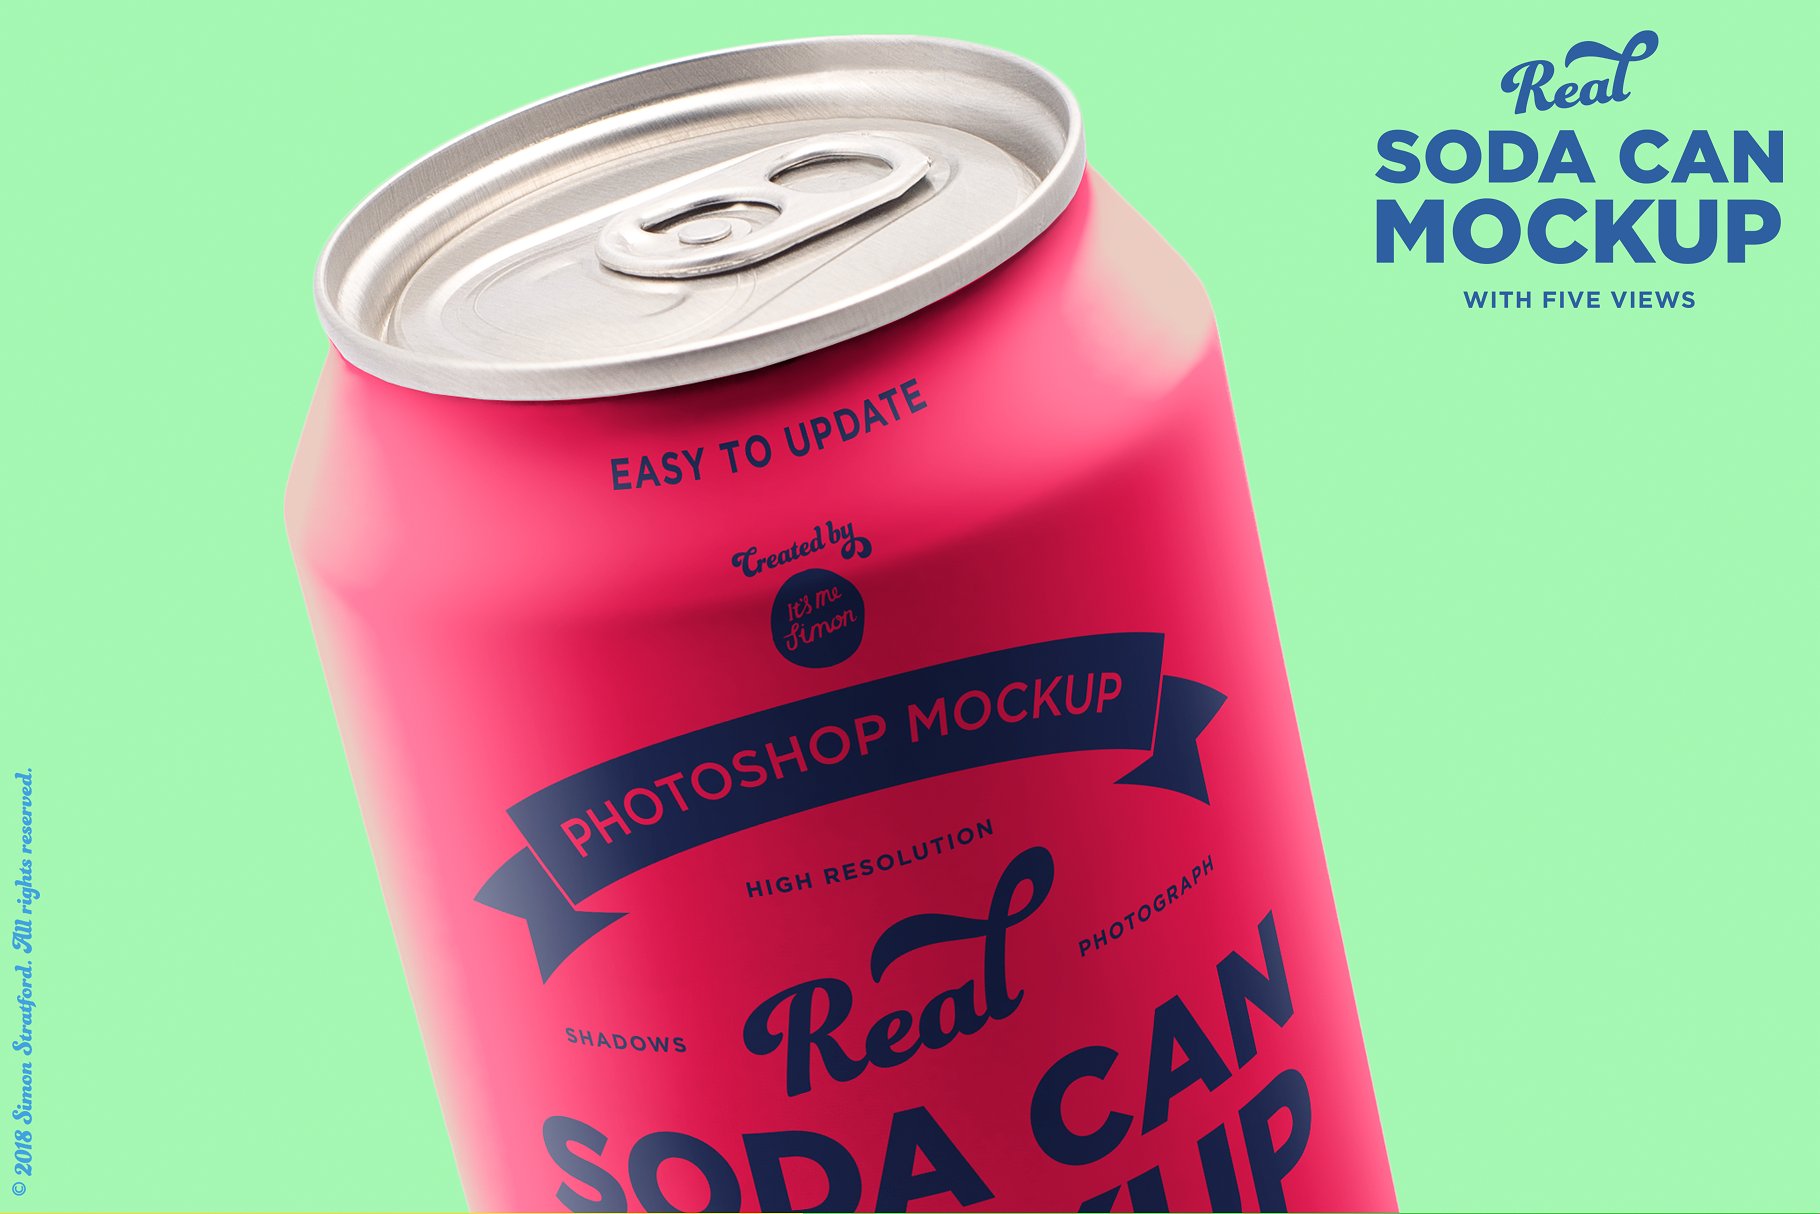 苏打水饮料易拉罐外观设计样机 Real soda can mockup for photoshop插图(6)